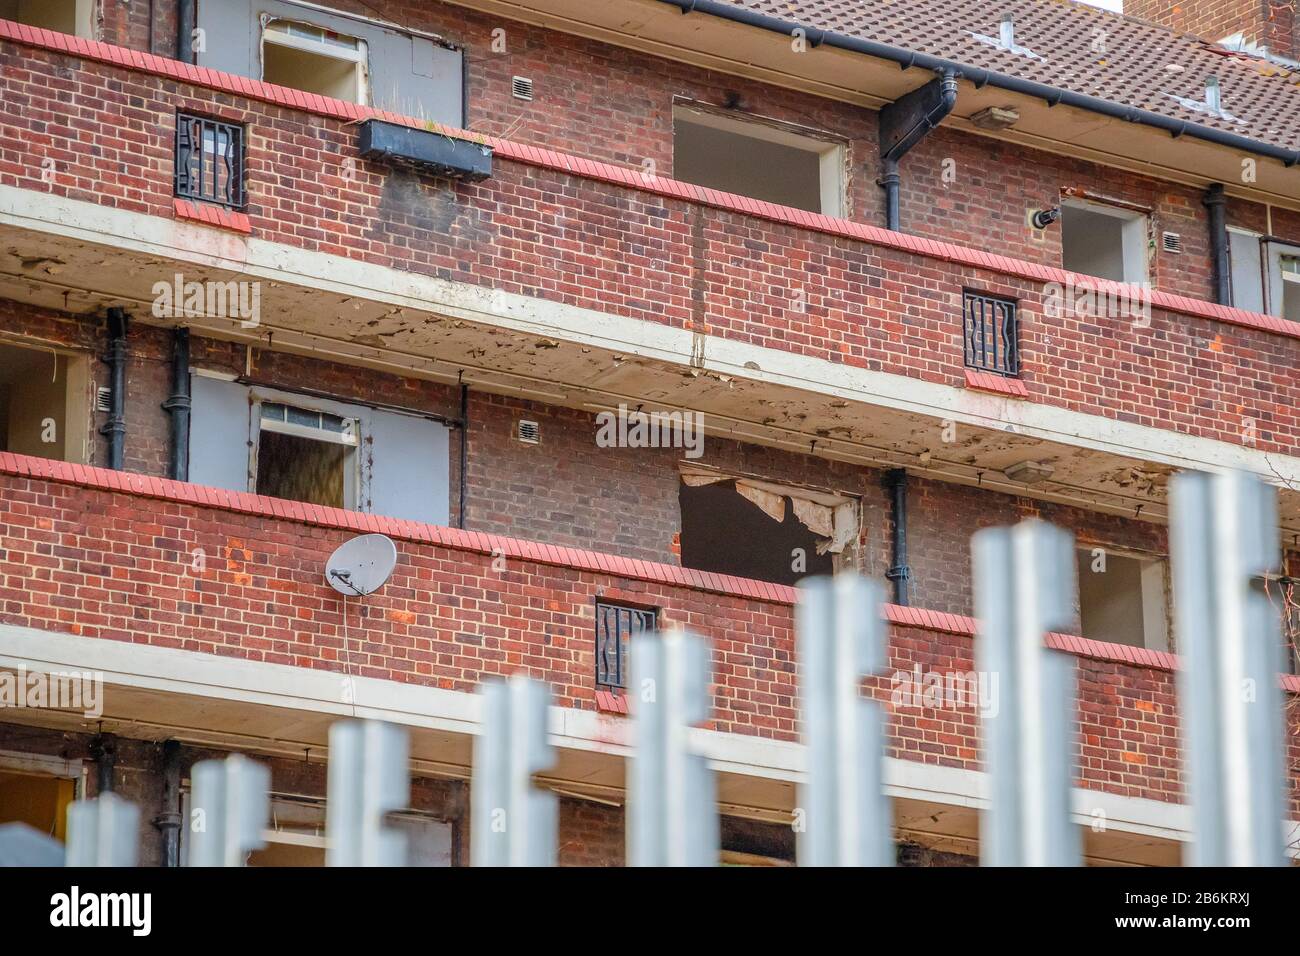 Verlassener wohnblock des rates rund um das Gebiet von Walworth im Südosten Londons Stockfoto